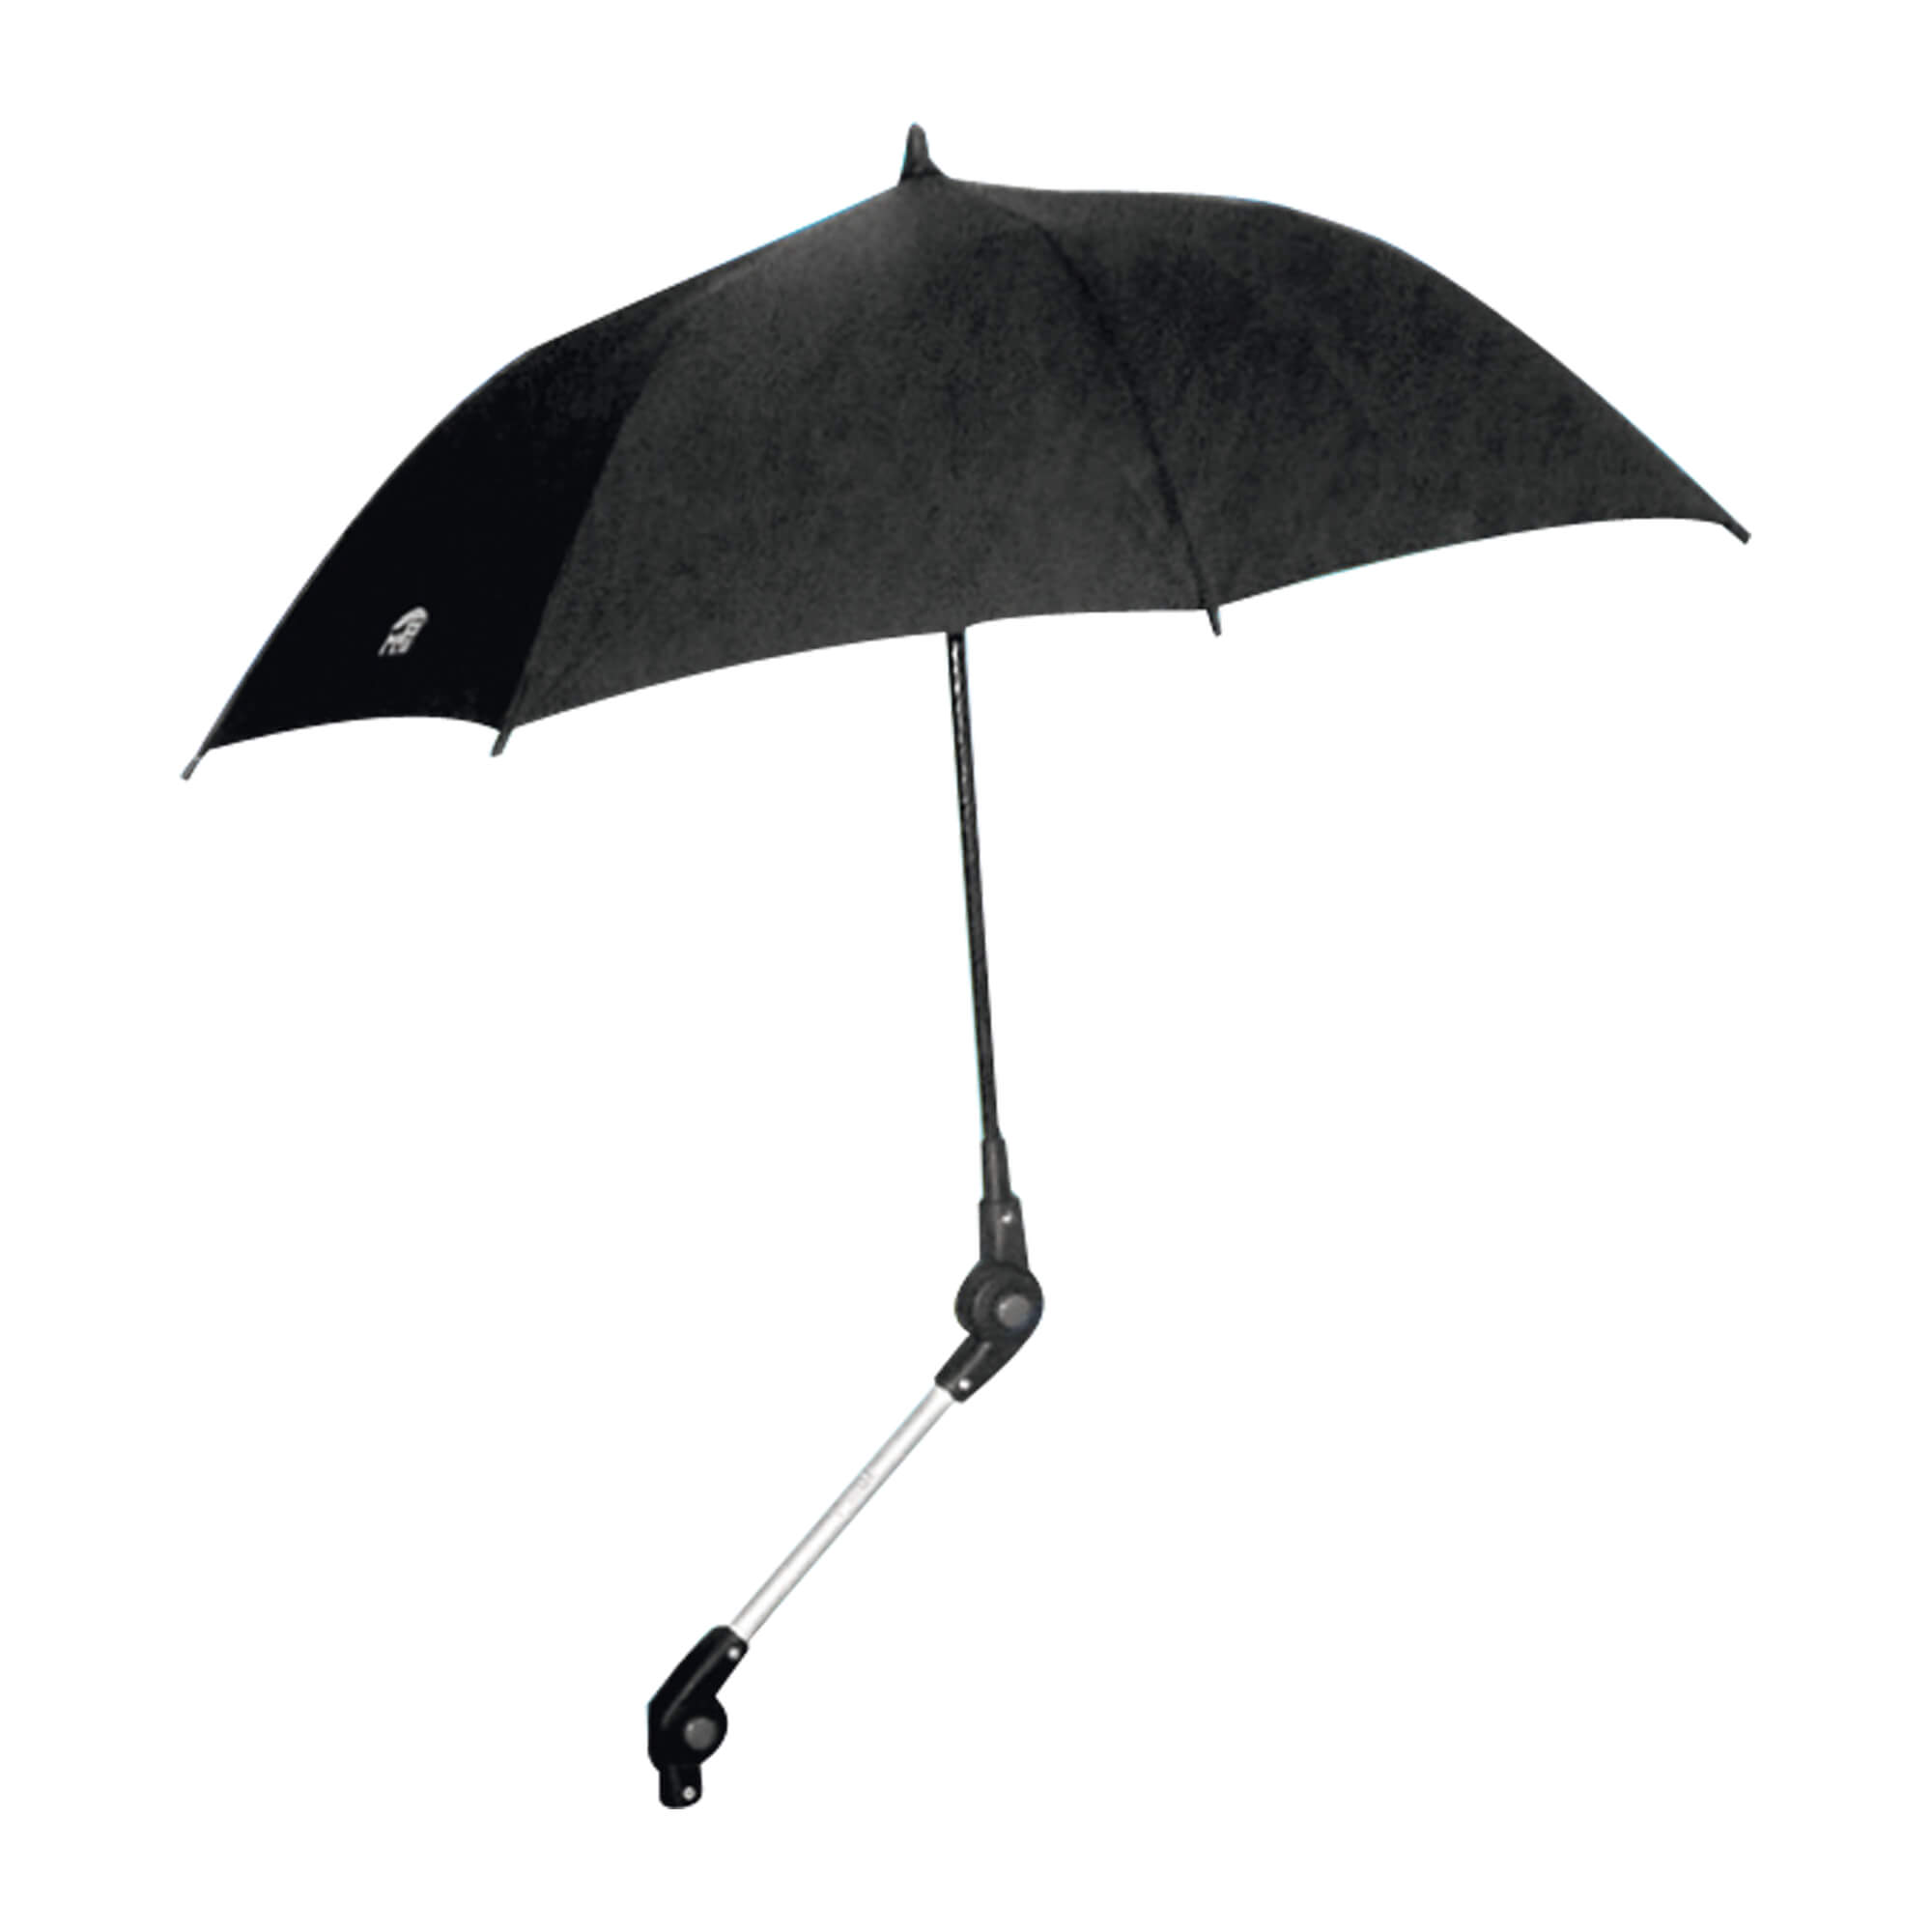 Regenschirm zur Befestigung am Rollator.